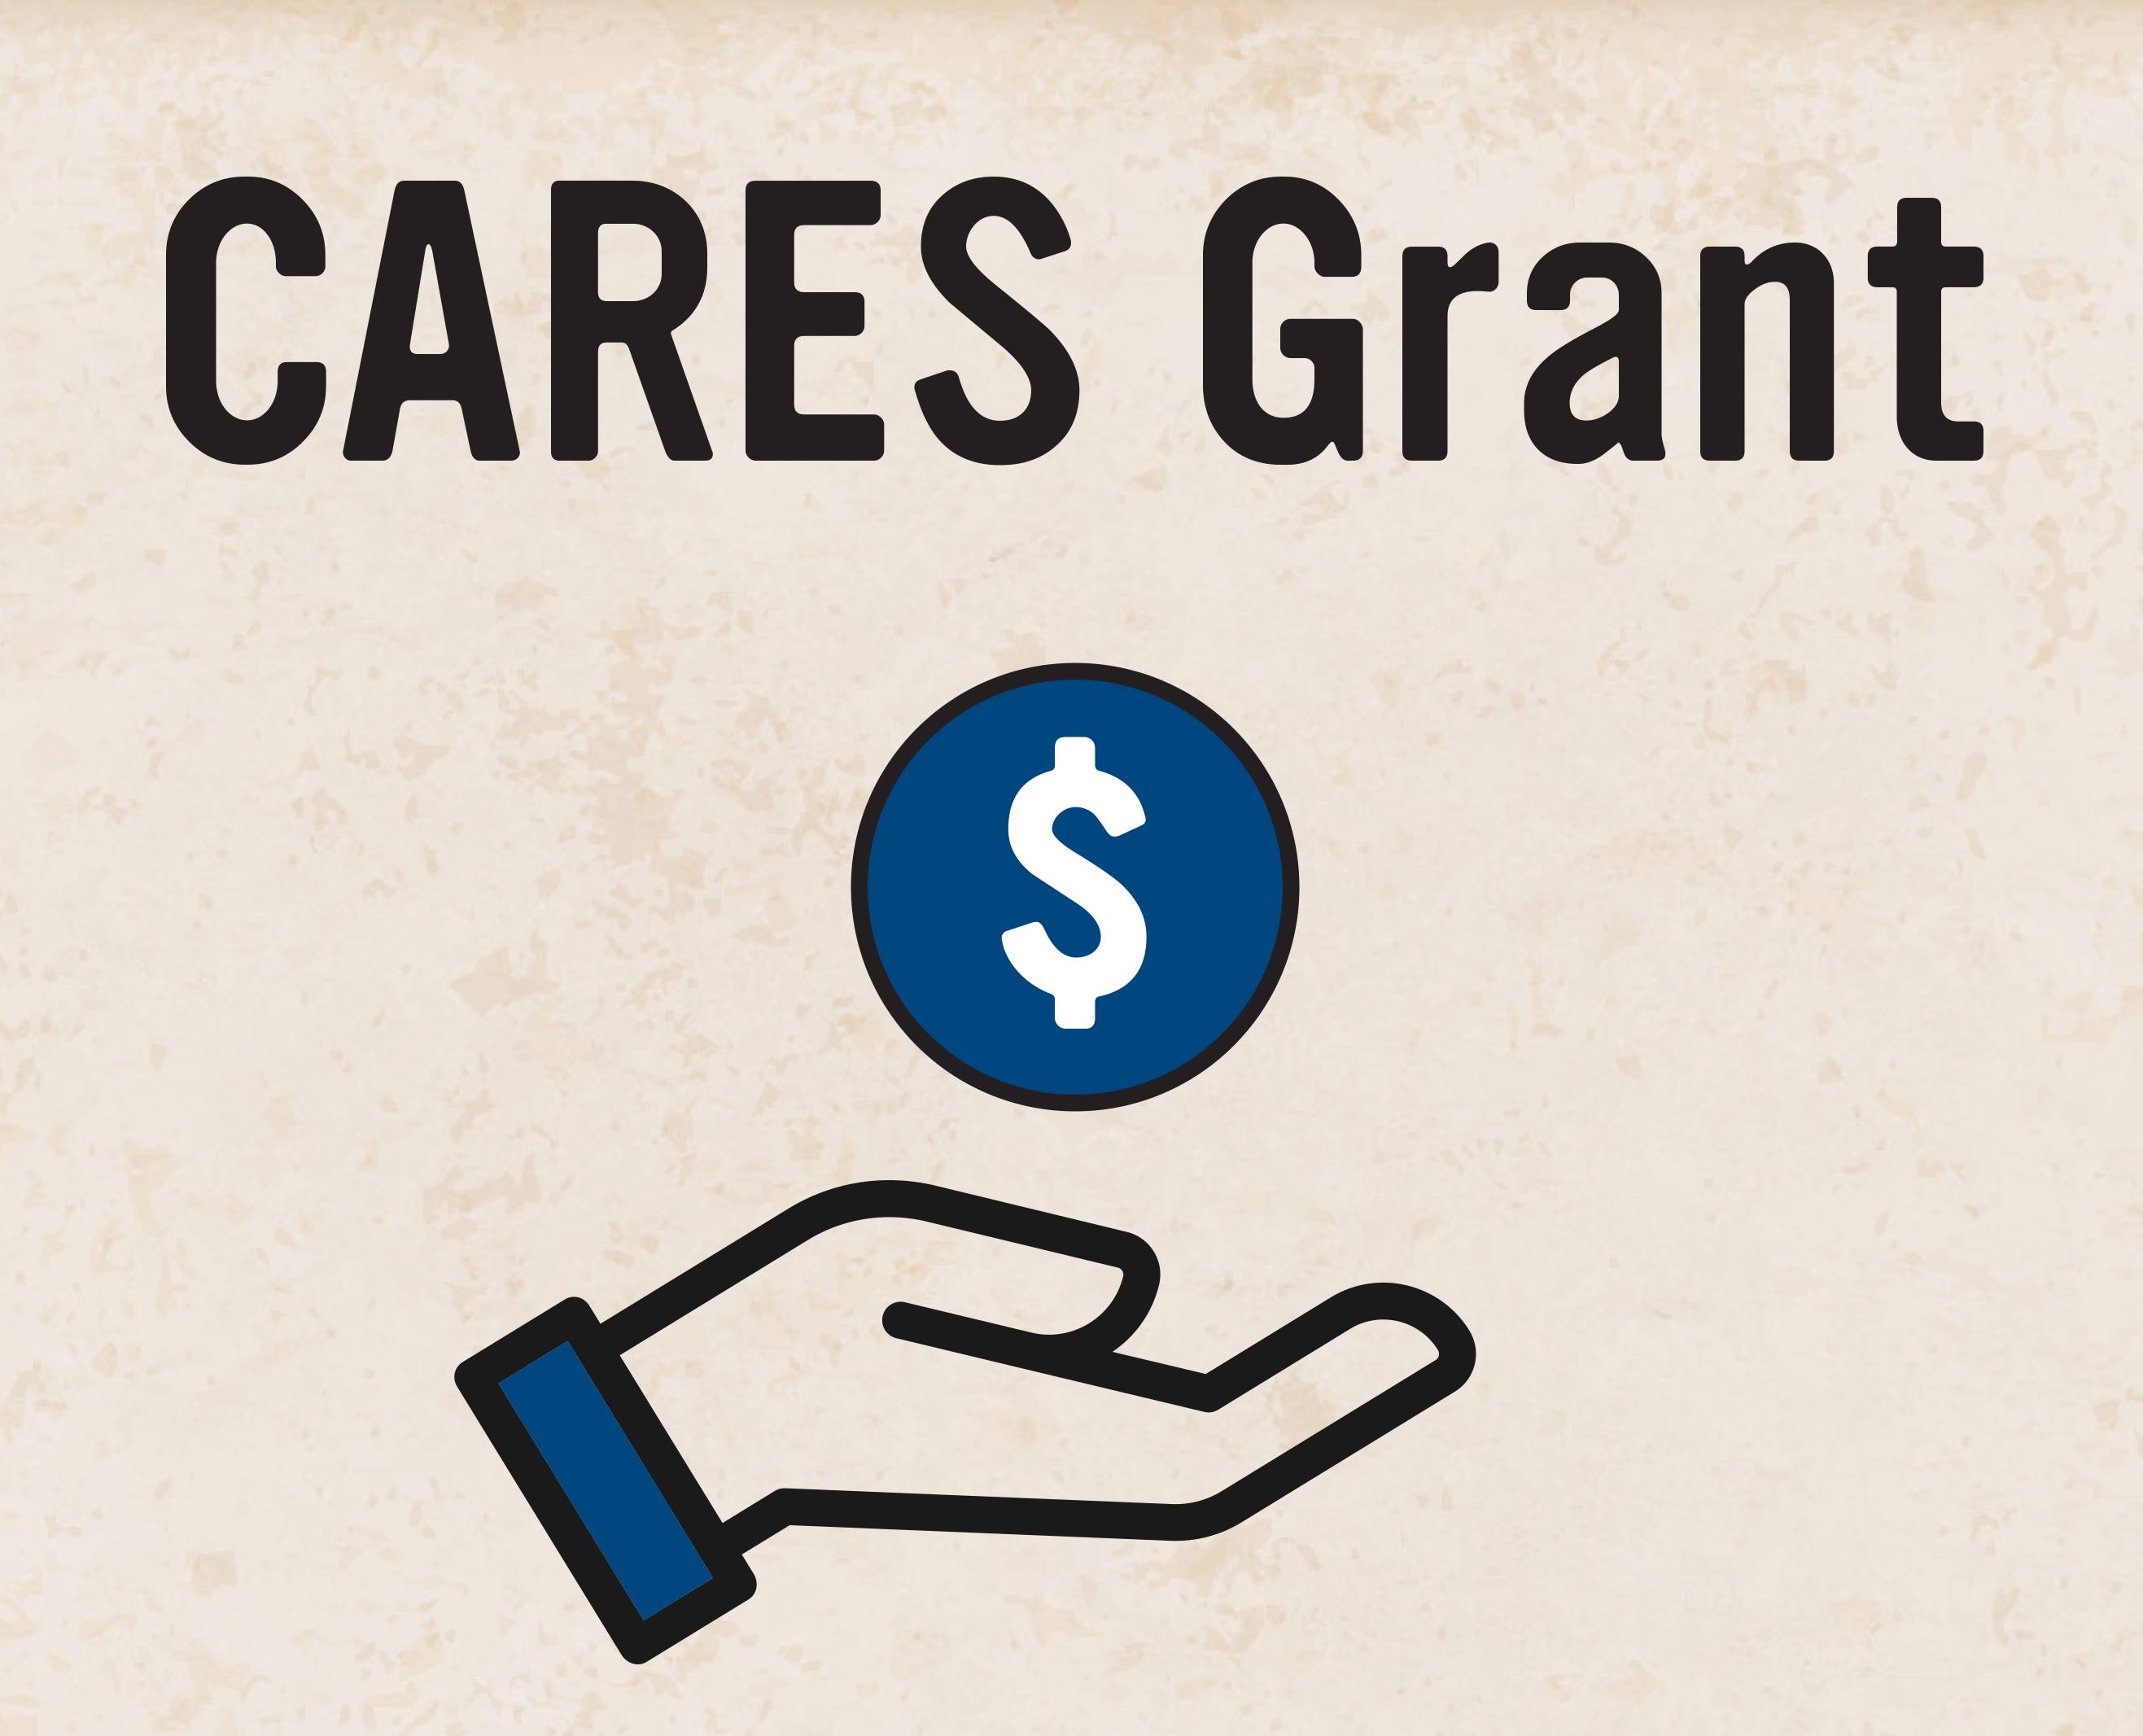 Cares grant